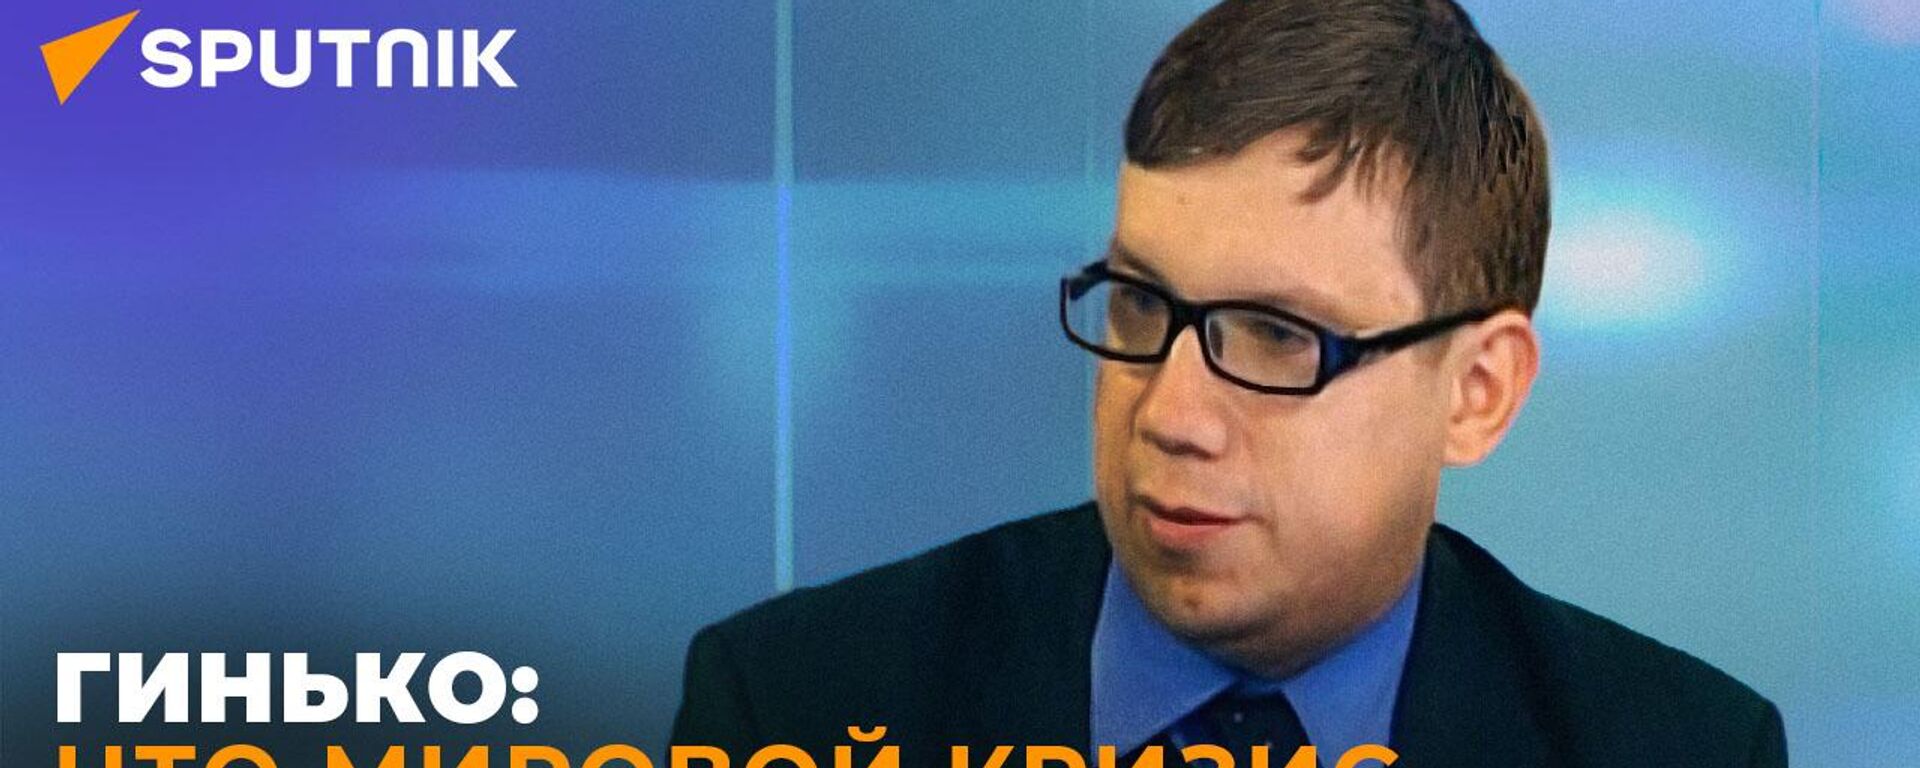 Экономист Гинько об экономической катастрофе в США - видео - Sputnik Грузия, 1920, 05.09.2022